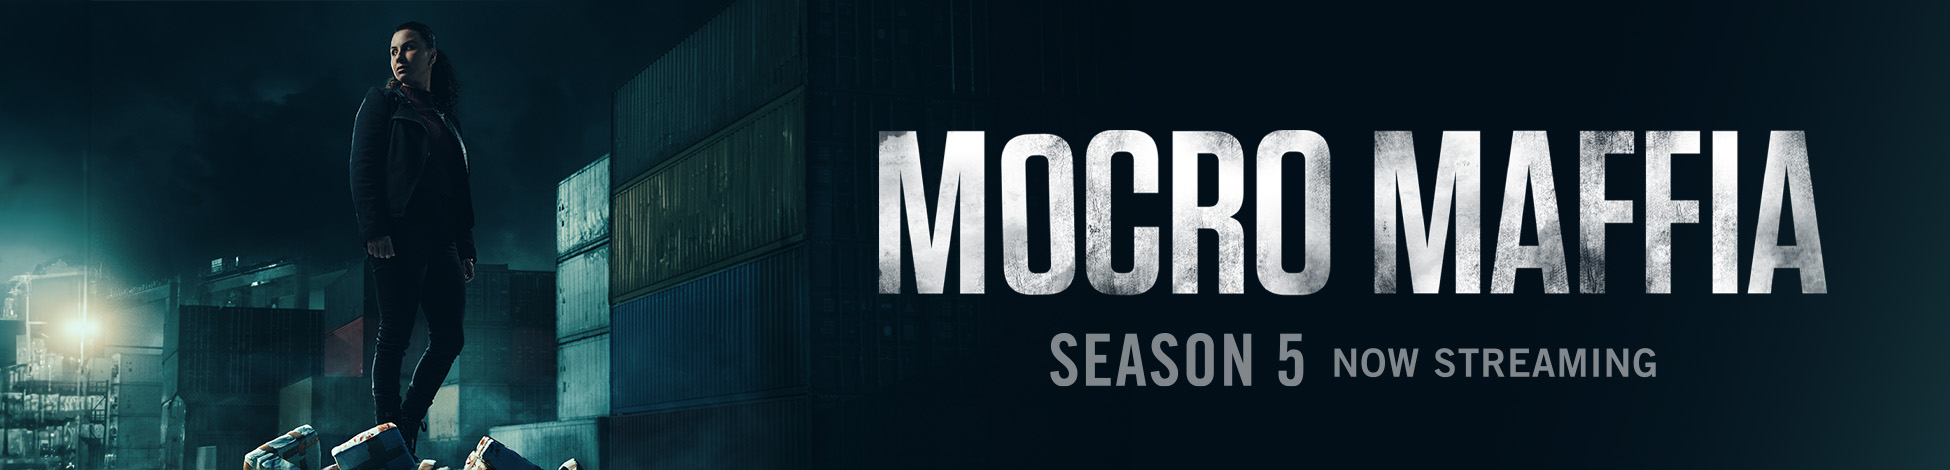 Mocro Maffia Season 5